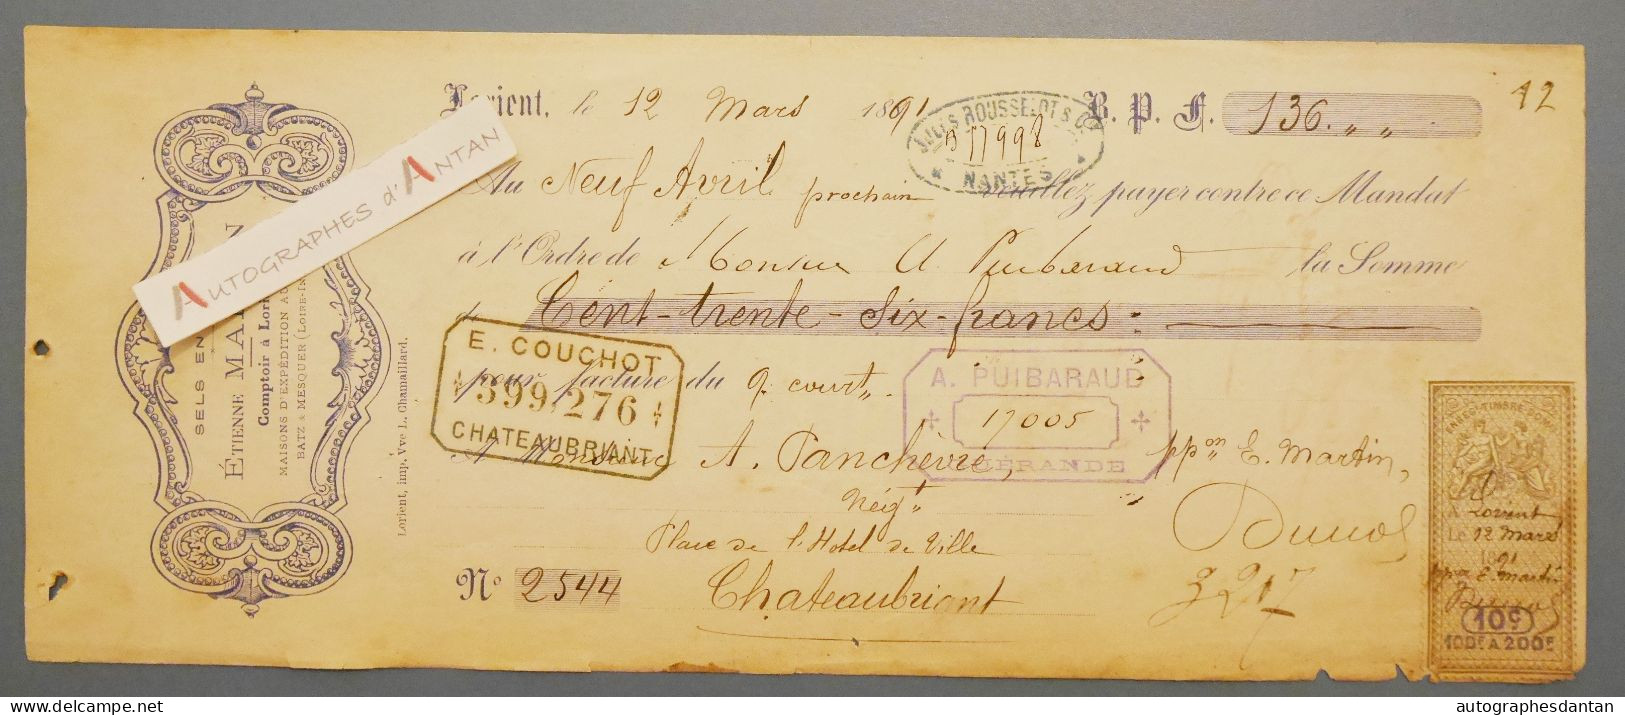 ● Lorient 1891 Etienne MARTIN Sels En Gros - Panchevre Négociant à Chateaubriant - Rare Mandat Lettre De Change - Lettres De Change